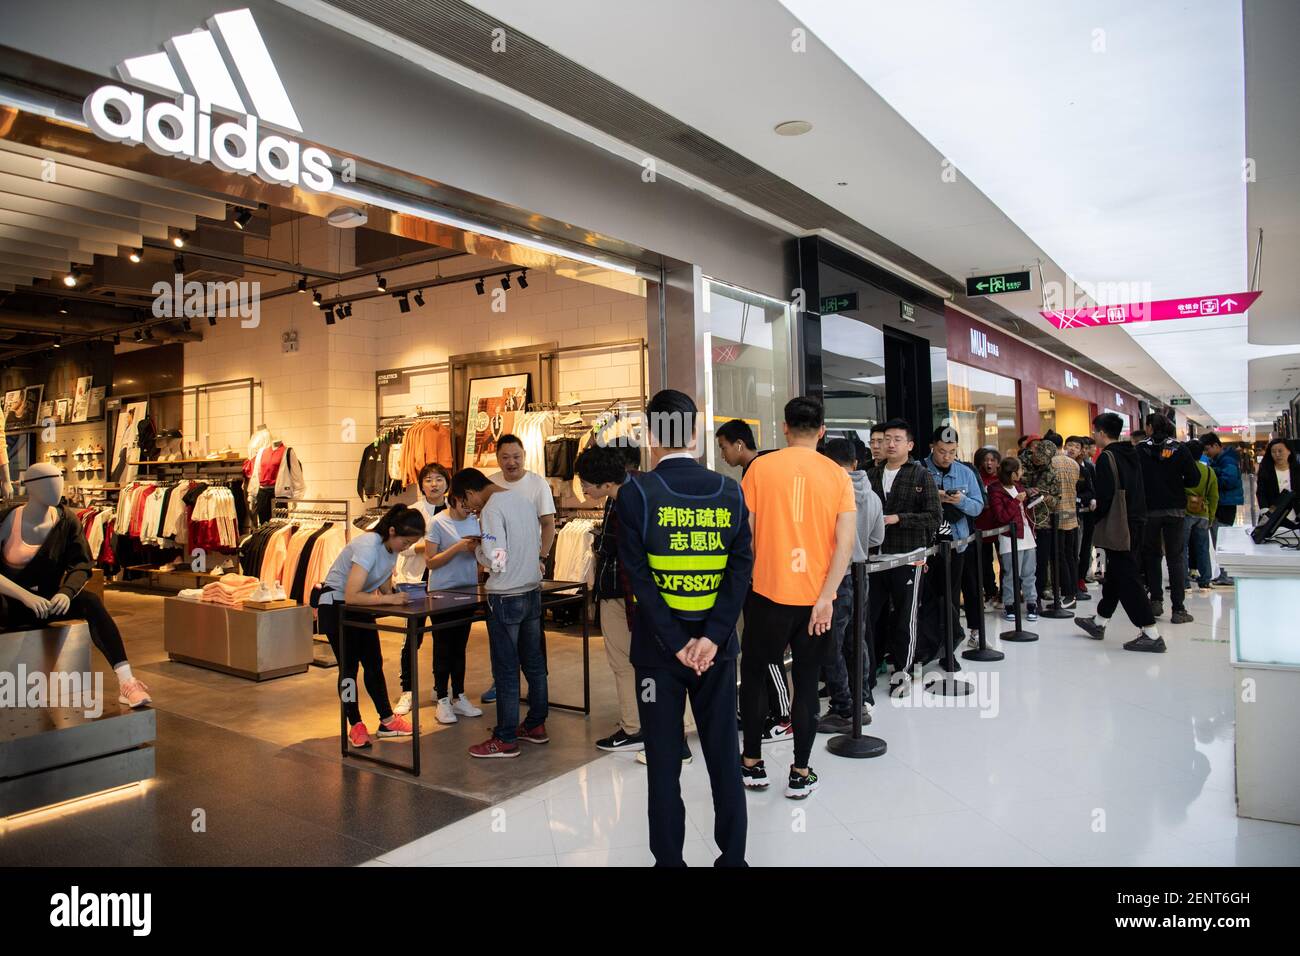 Los consumidores se alinean para comprar el recién lanzado Adidas Yeezy,  una colaboración entre la Marca alemana de ropa deportiva Adidas y el  rapero estadounidense Kanye West, en una tienda Adidas en